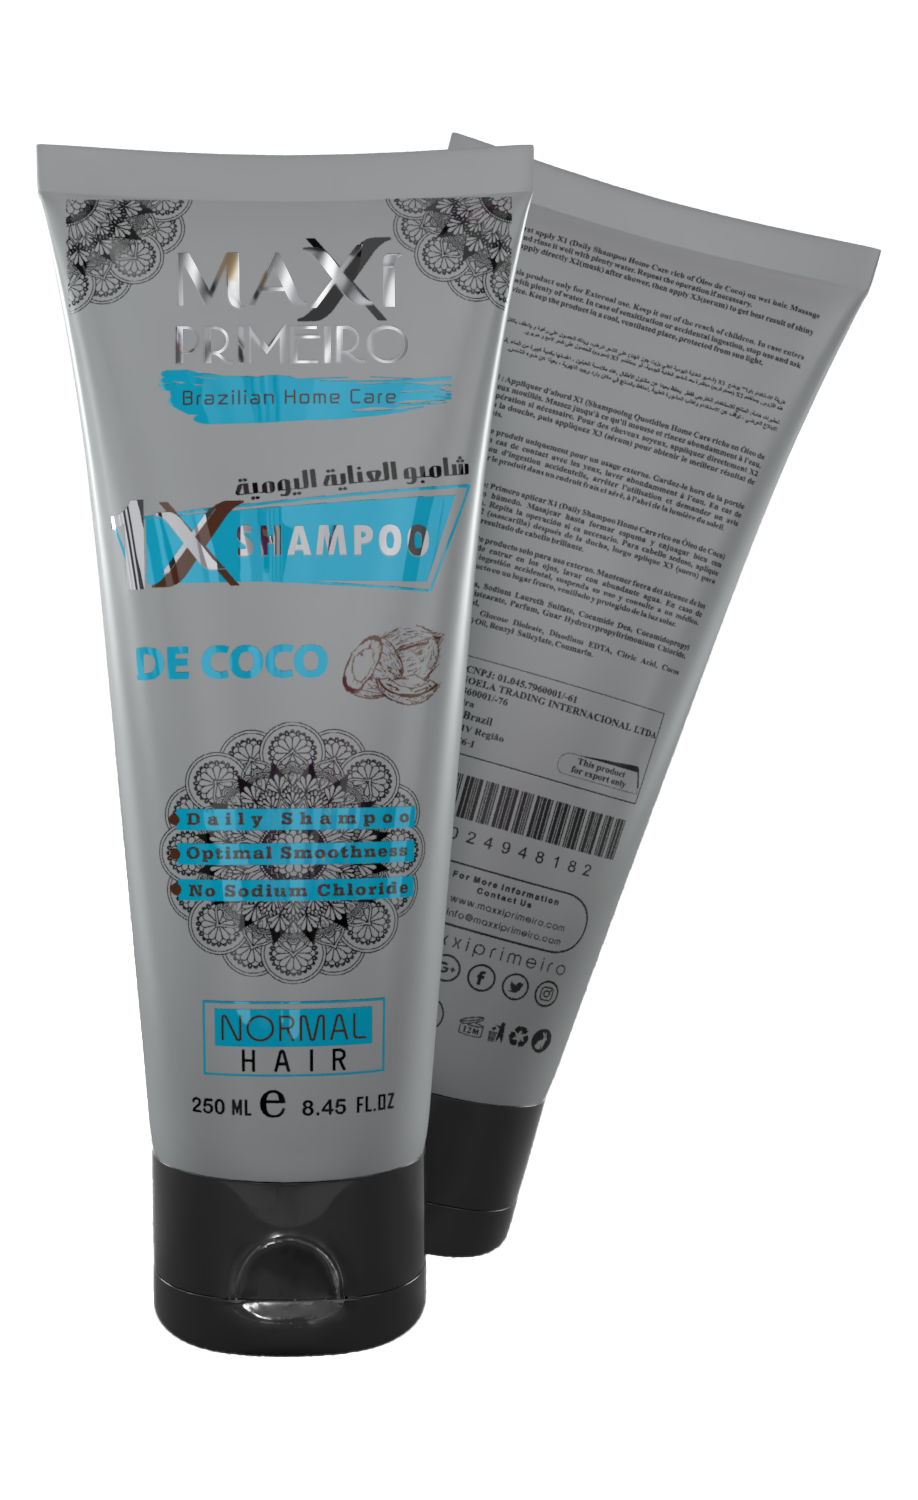 X1 shampoo 250ml De coco (Home Care)